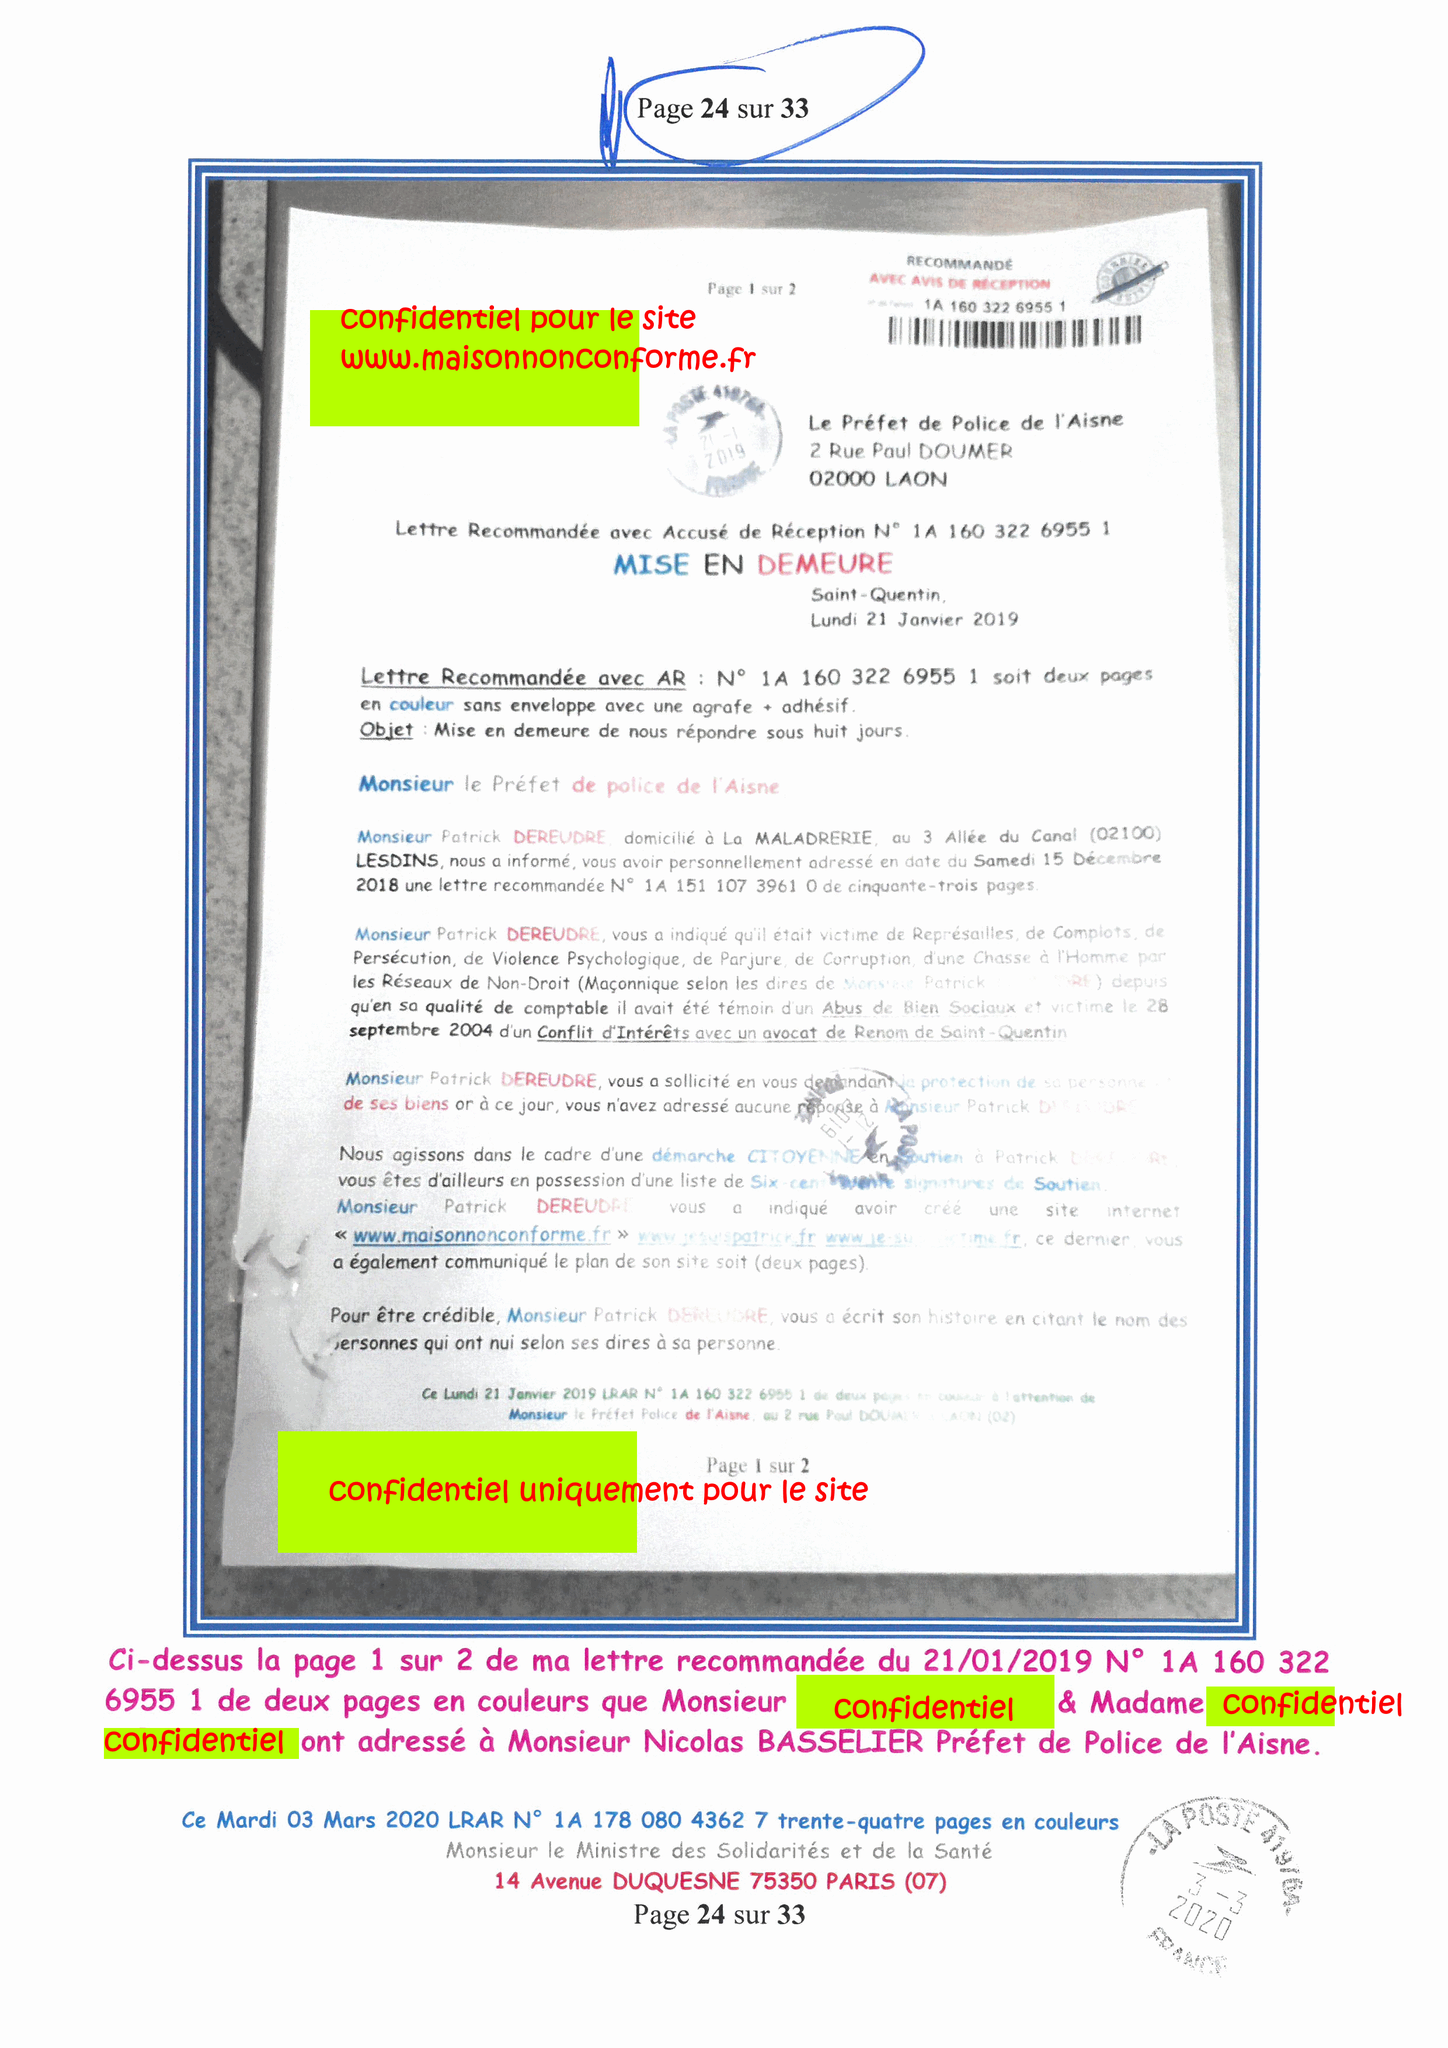 Page 24 sur 33 Ma lettre recommandée N0 1A 178 080 4362 7 du 03 Mars 2020 à Monsieur Olivier VERAN le Ministre de la Santé et des Solidarités www.jesuispatrick.fr www.jesuisvictime.fr www.alerte-rouge-france.fr